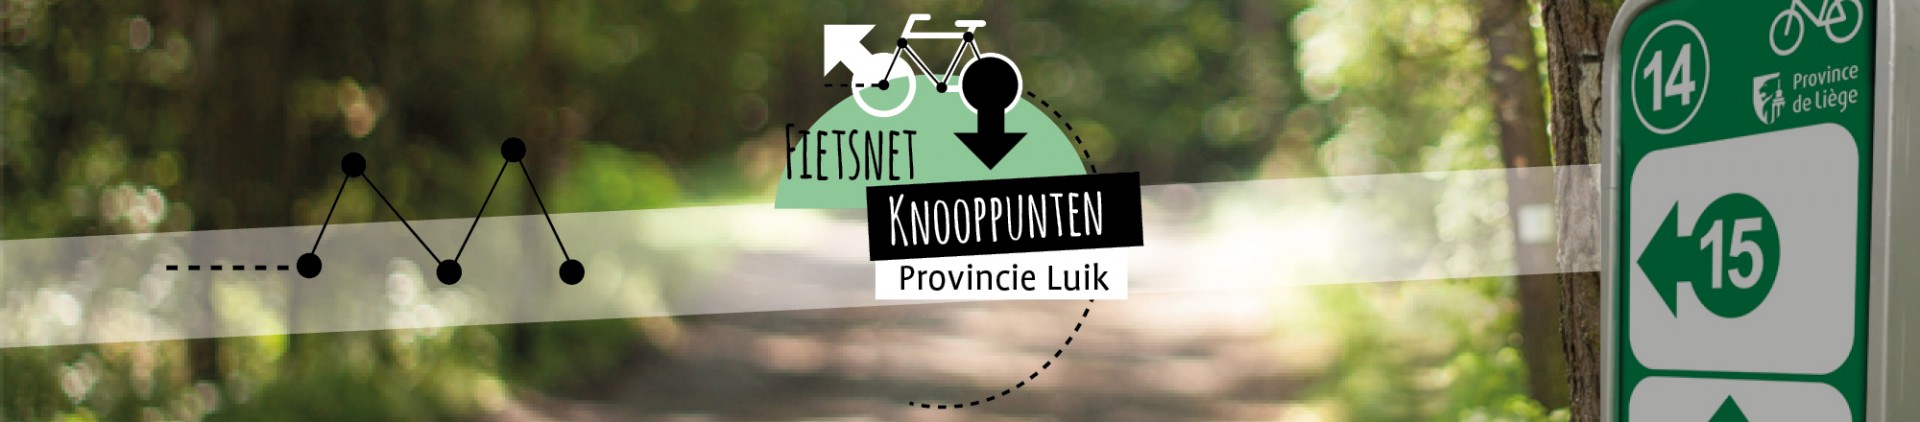 Knooppuntennetwerk voor fietstoerisme van de provincie Luik